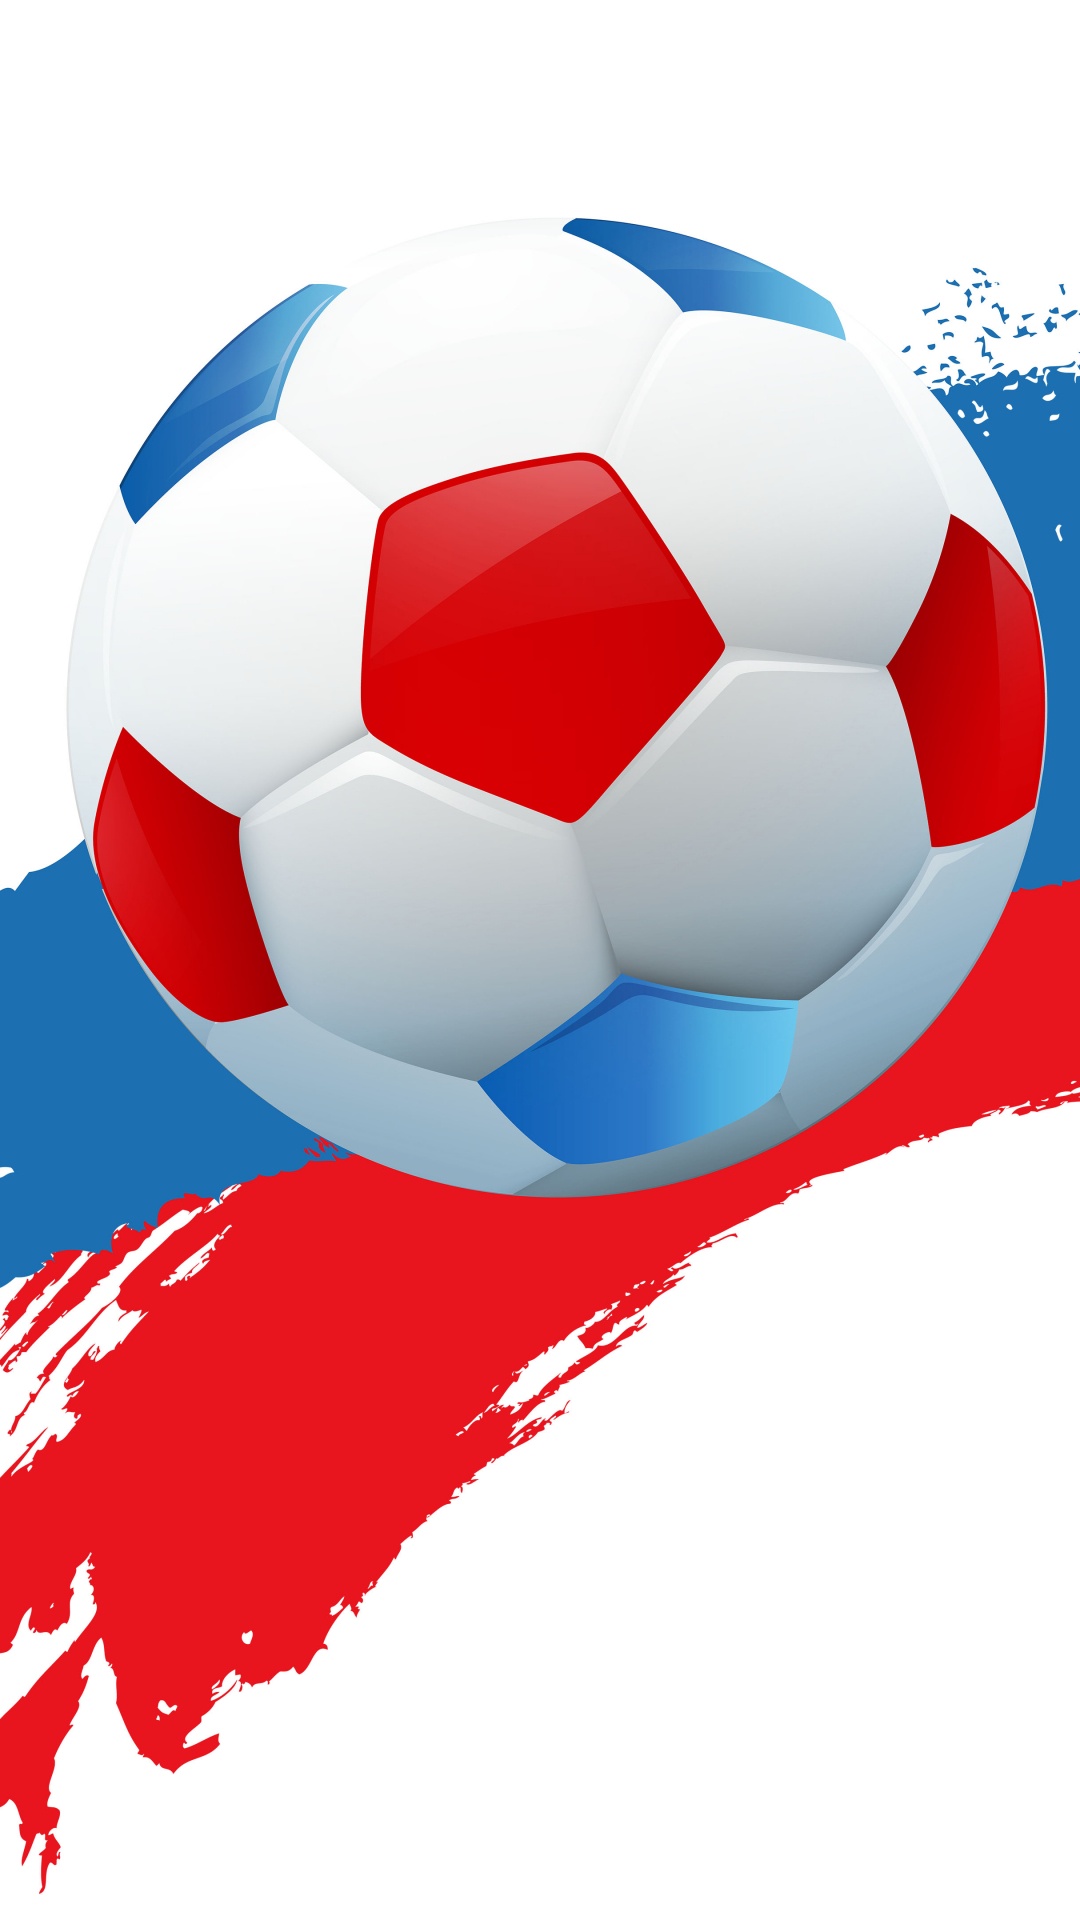 2018年世界杯, 球, 国际足联, 足球, 体育设备 壁纸 1080x1920 允许